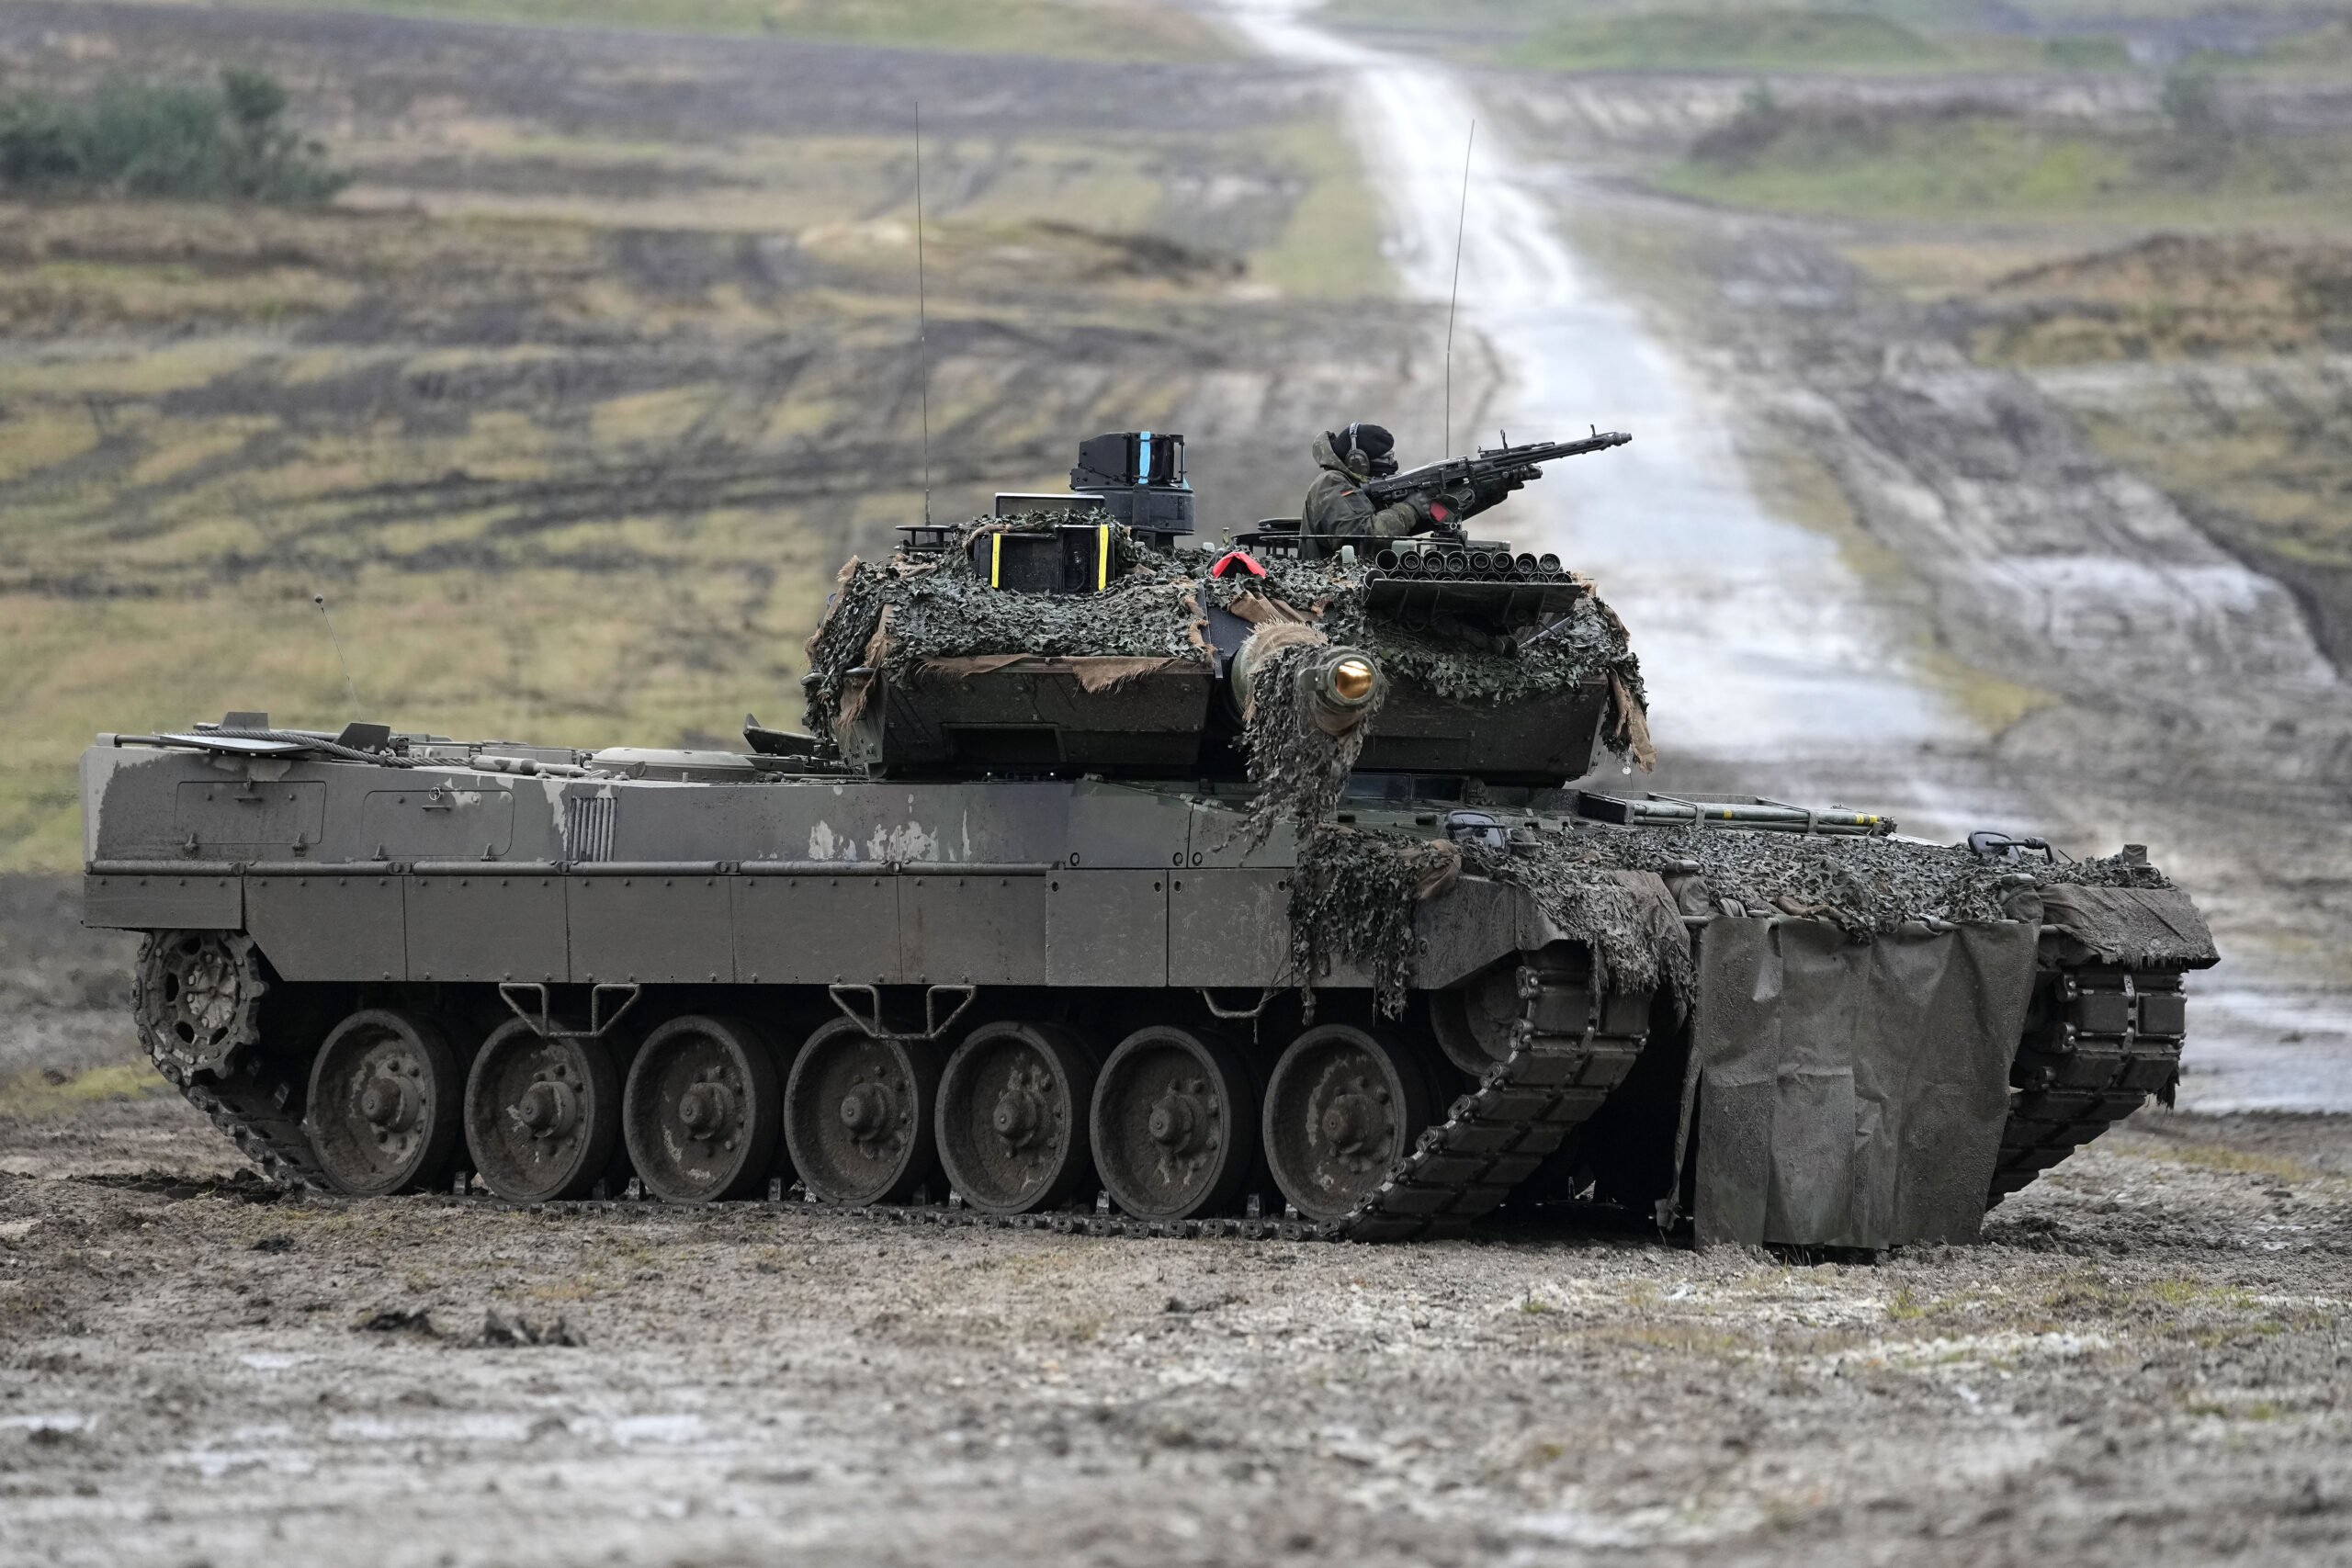 Στην αγορά Leopard 1 από ελβετική εταιρεία θέλει να προχωρήσει η Ολλανδία για να τα διαθέσει στην Ουκρανία